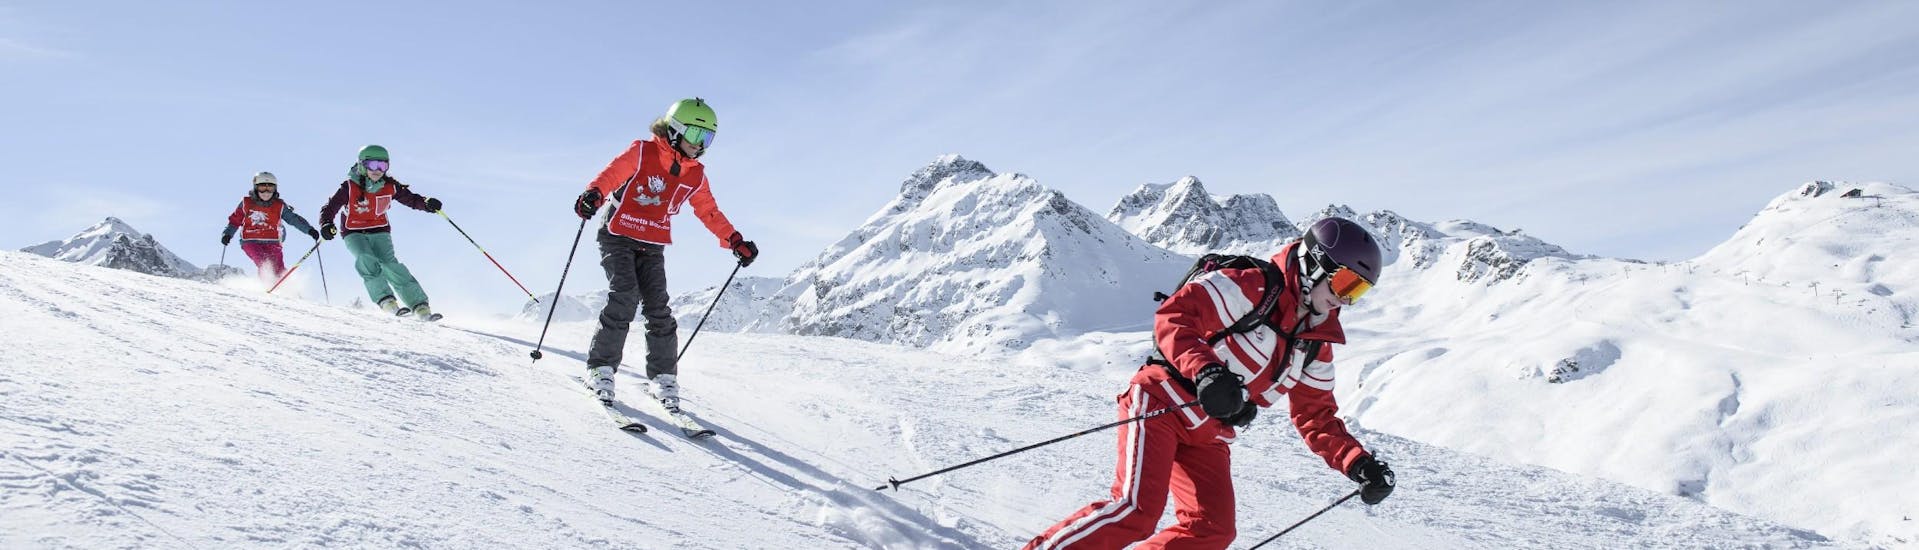 Clases de esquí para niños a partir de 6 años con experiencia.